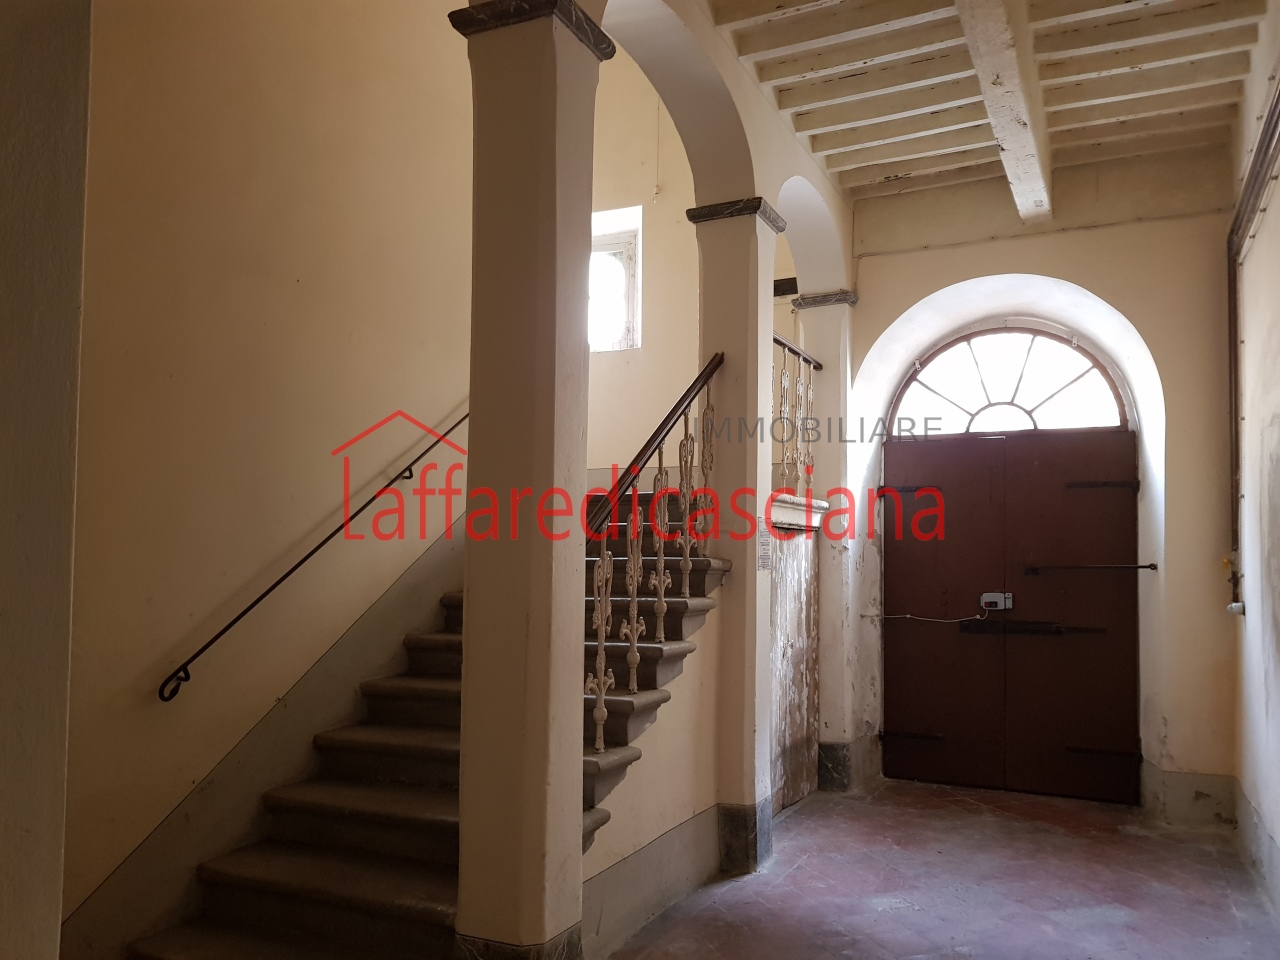 Appartamento in vendita a Casciana Terme Lari, 4 locali, prezzo € 105.000 | PortaleAgenzieImmobiliari.it